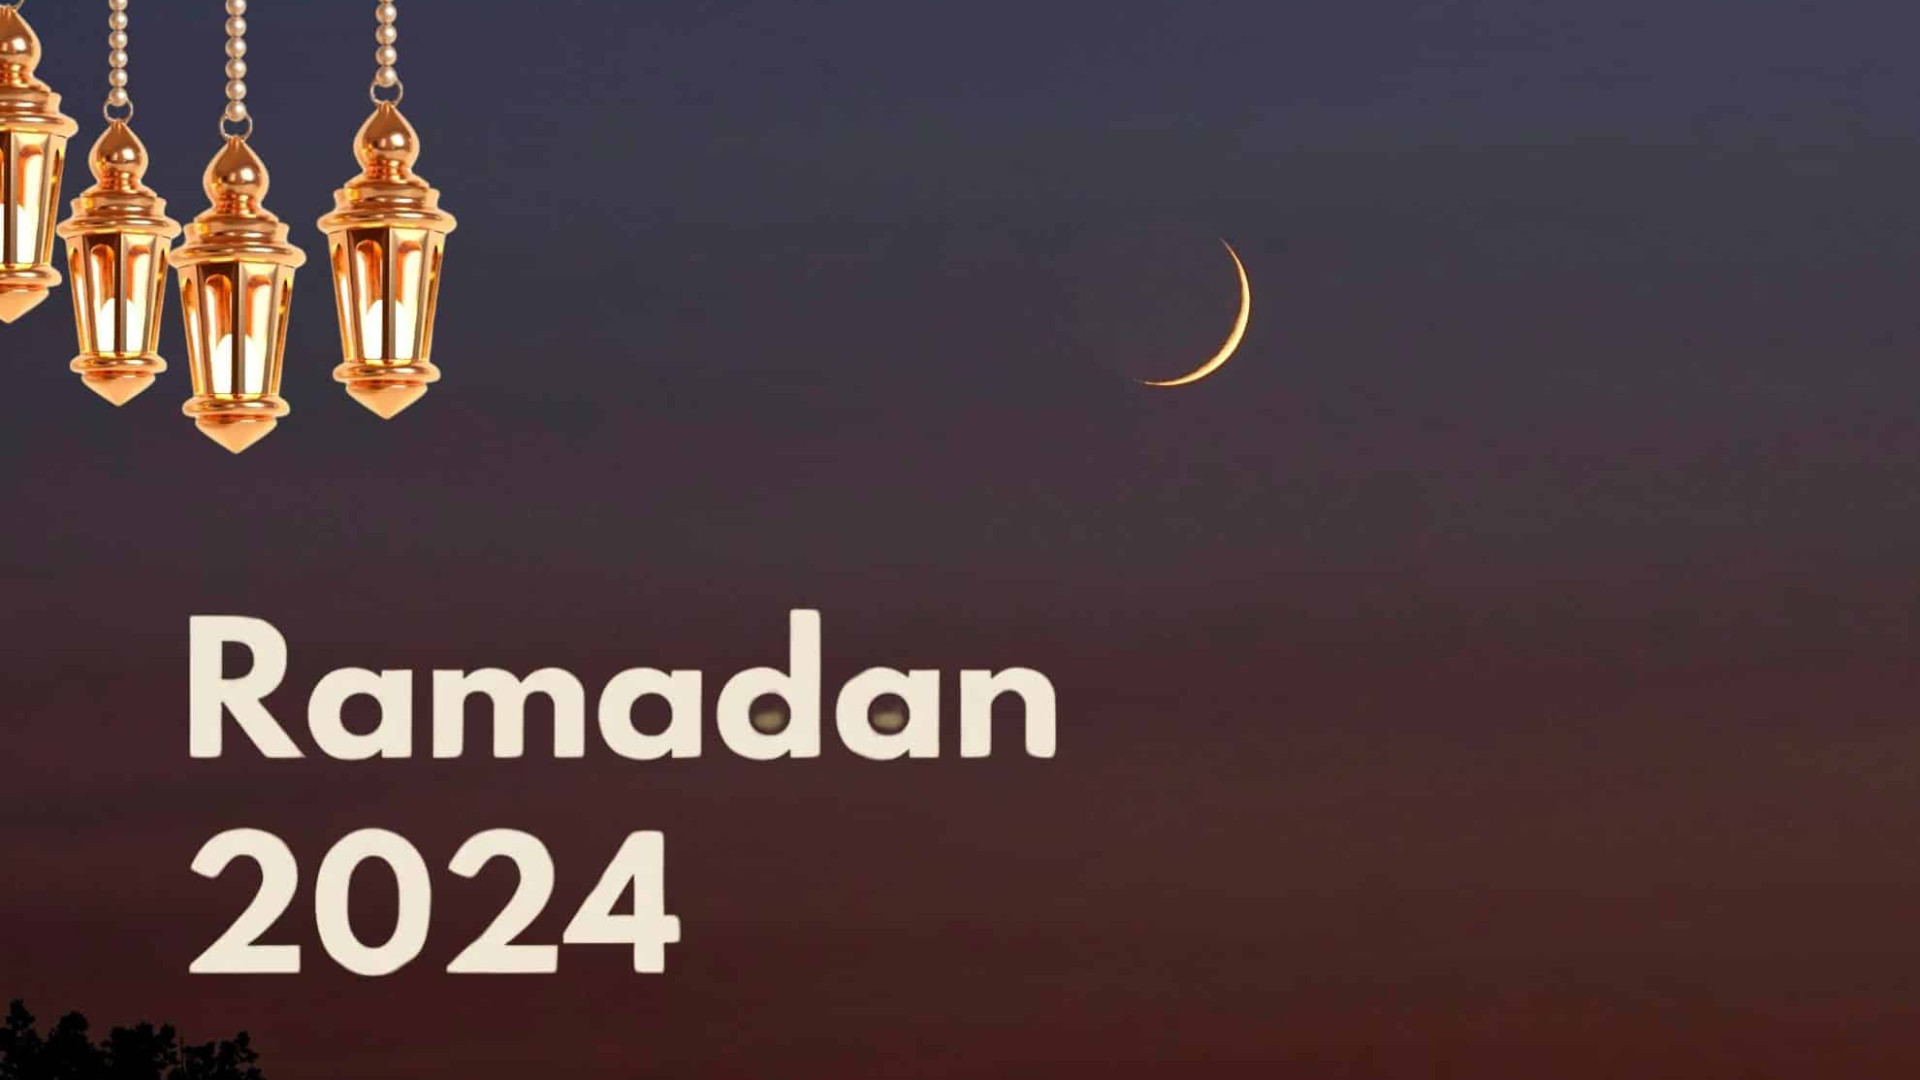 Por qué el Ramadán empieza en fechas diferentes cada año?